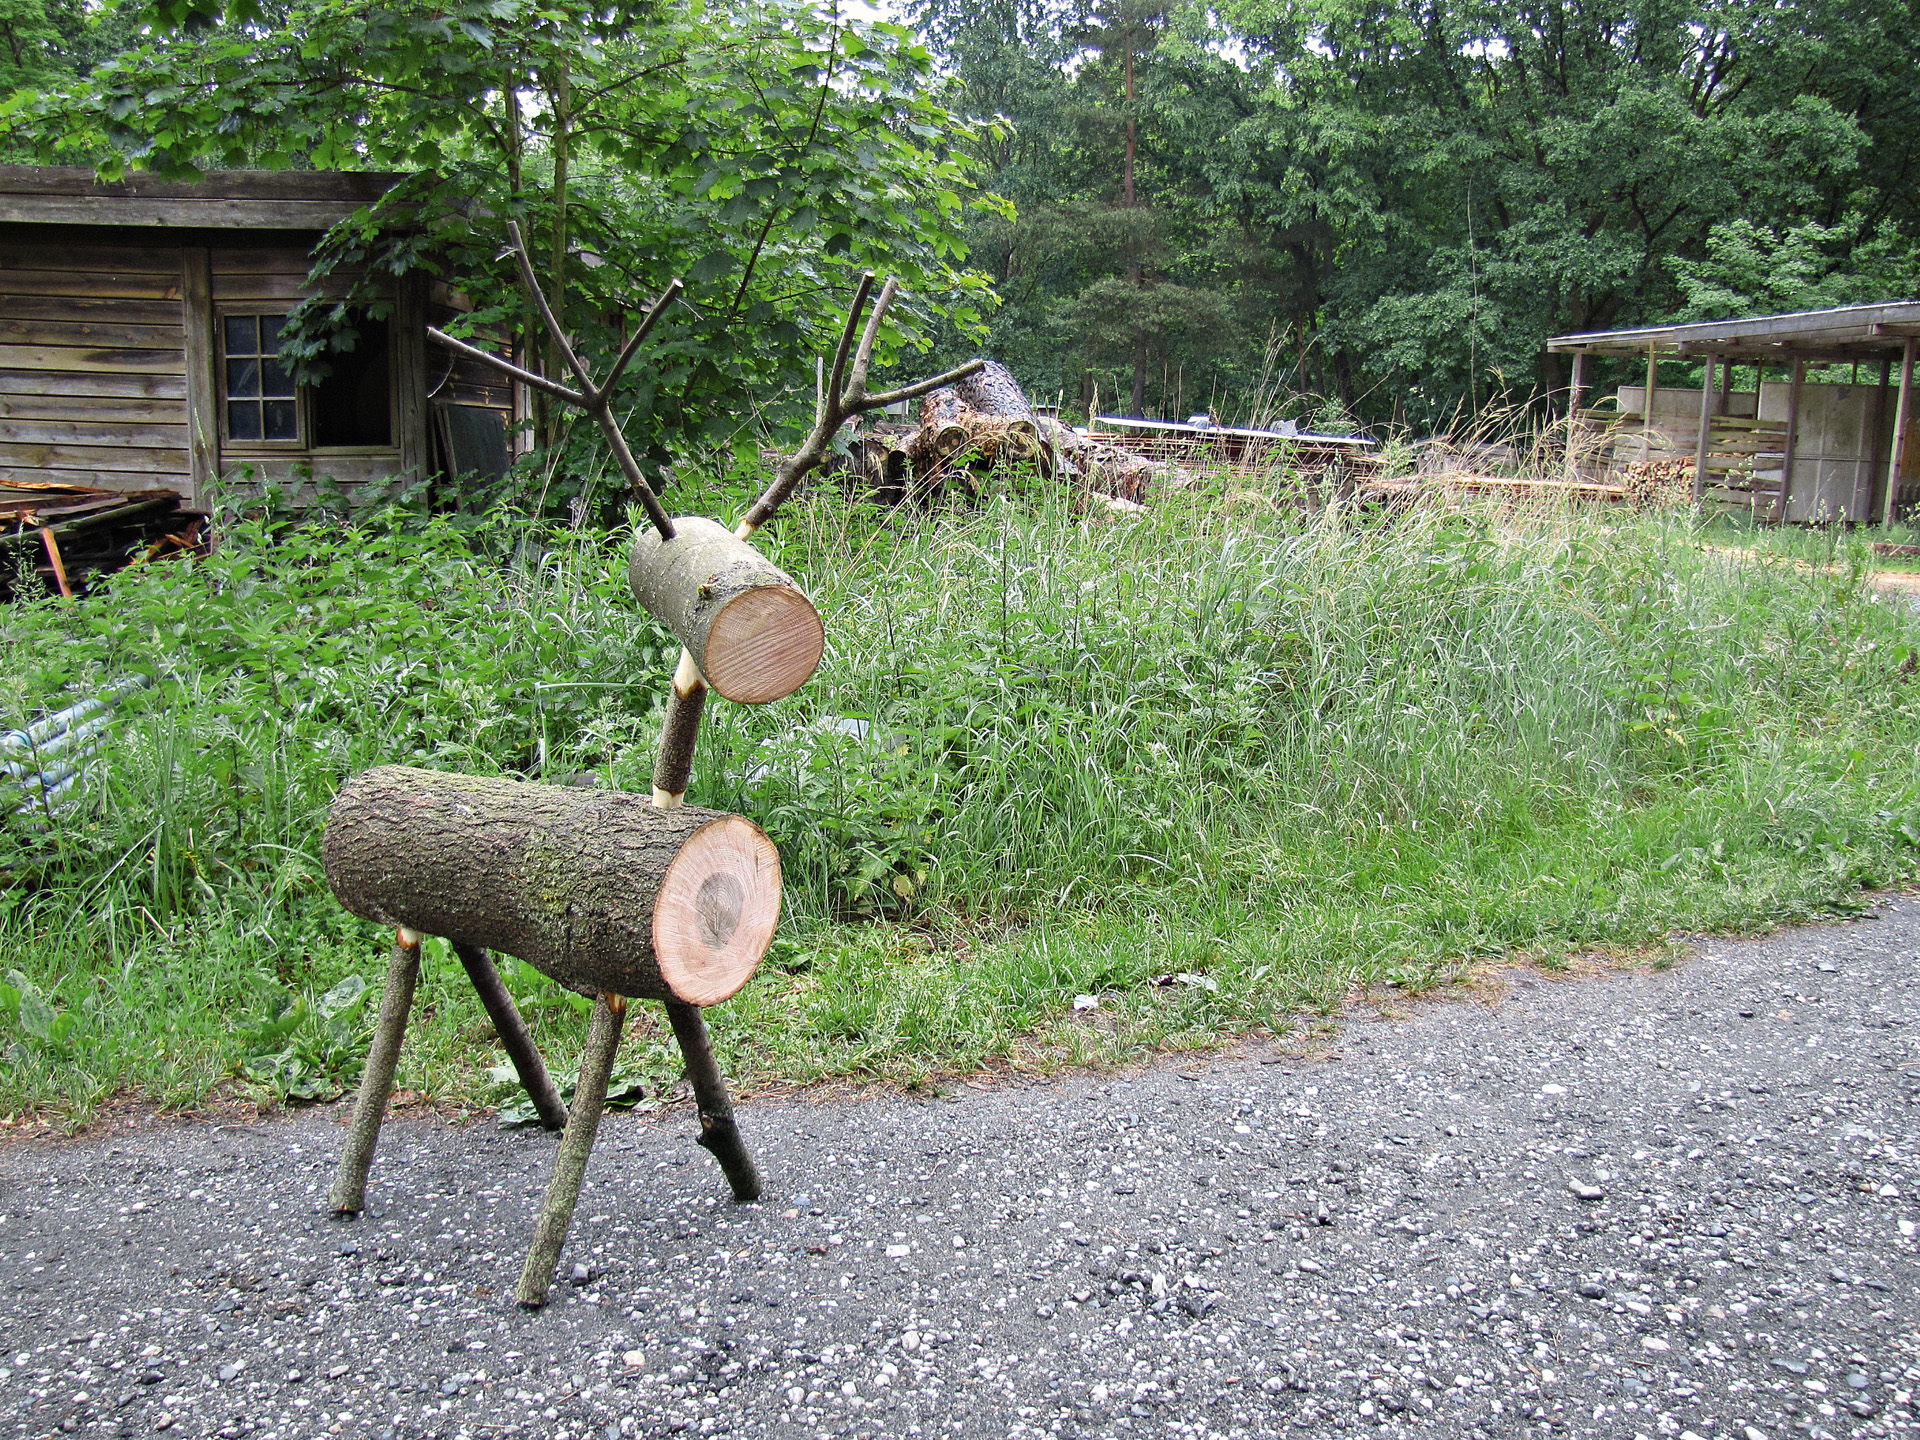 Renne en rondins de bois bricolé devant de l’herbe et une cabane